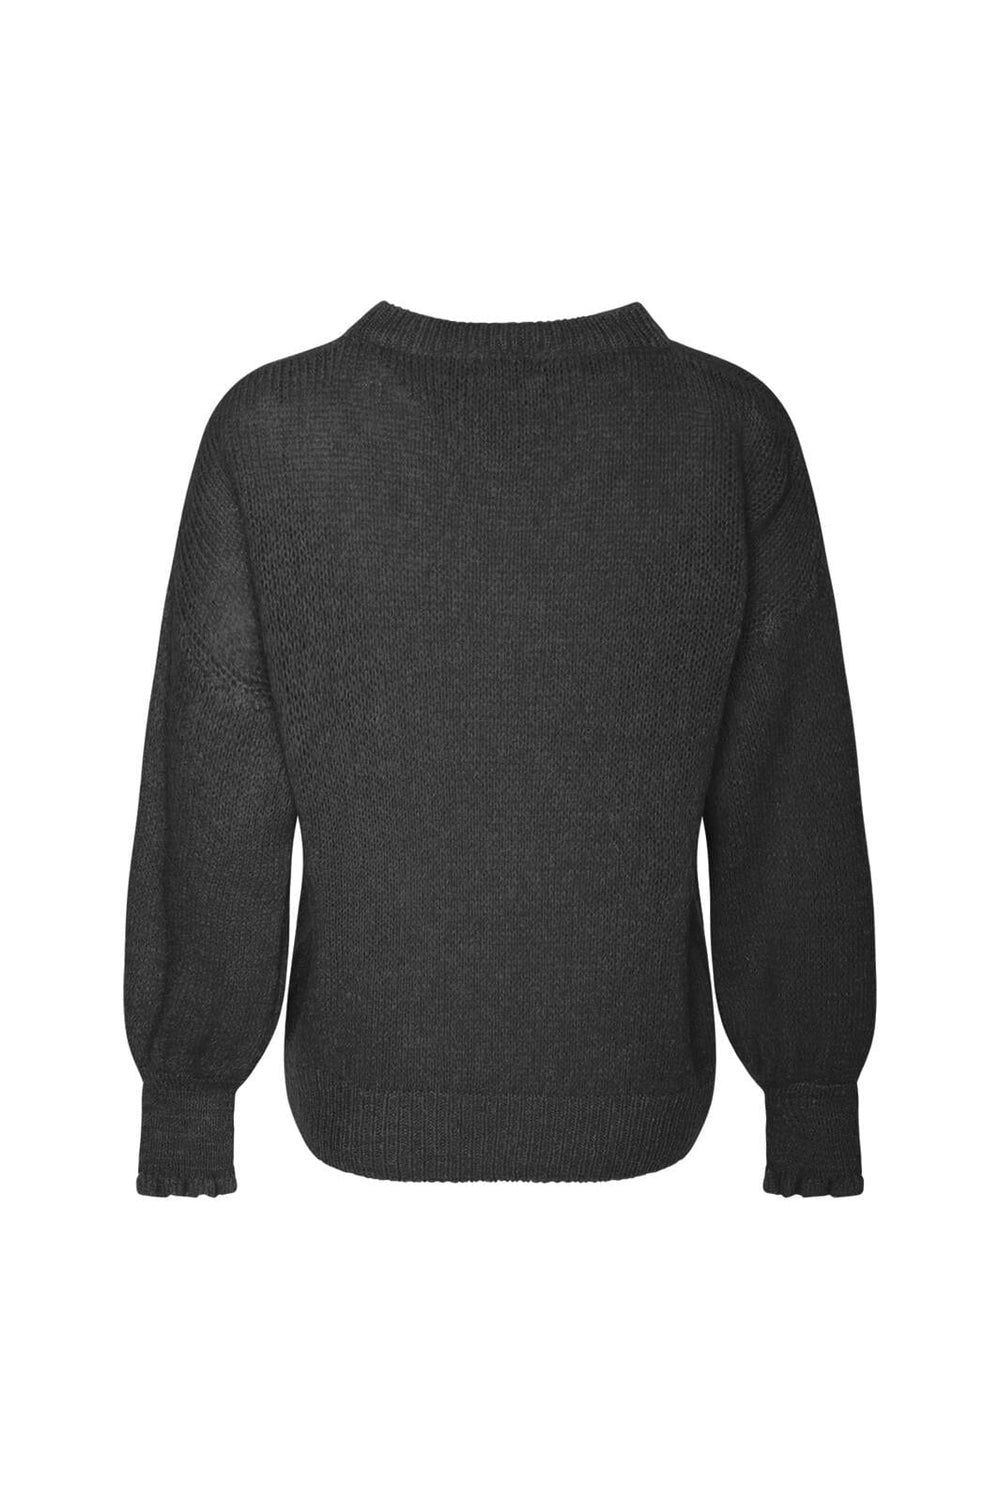 Noella - Finley Knit Sweater - 004 Black